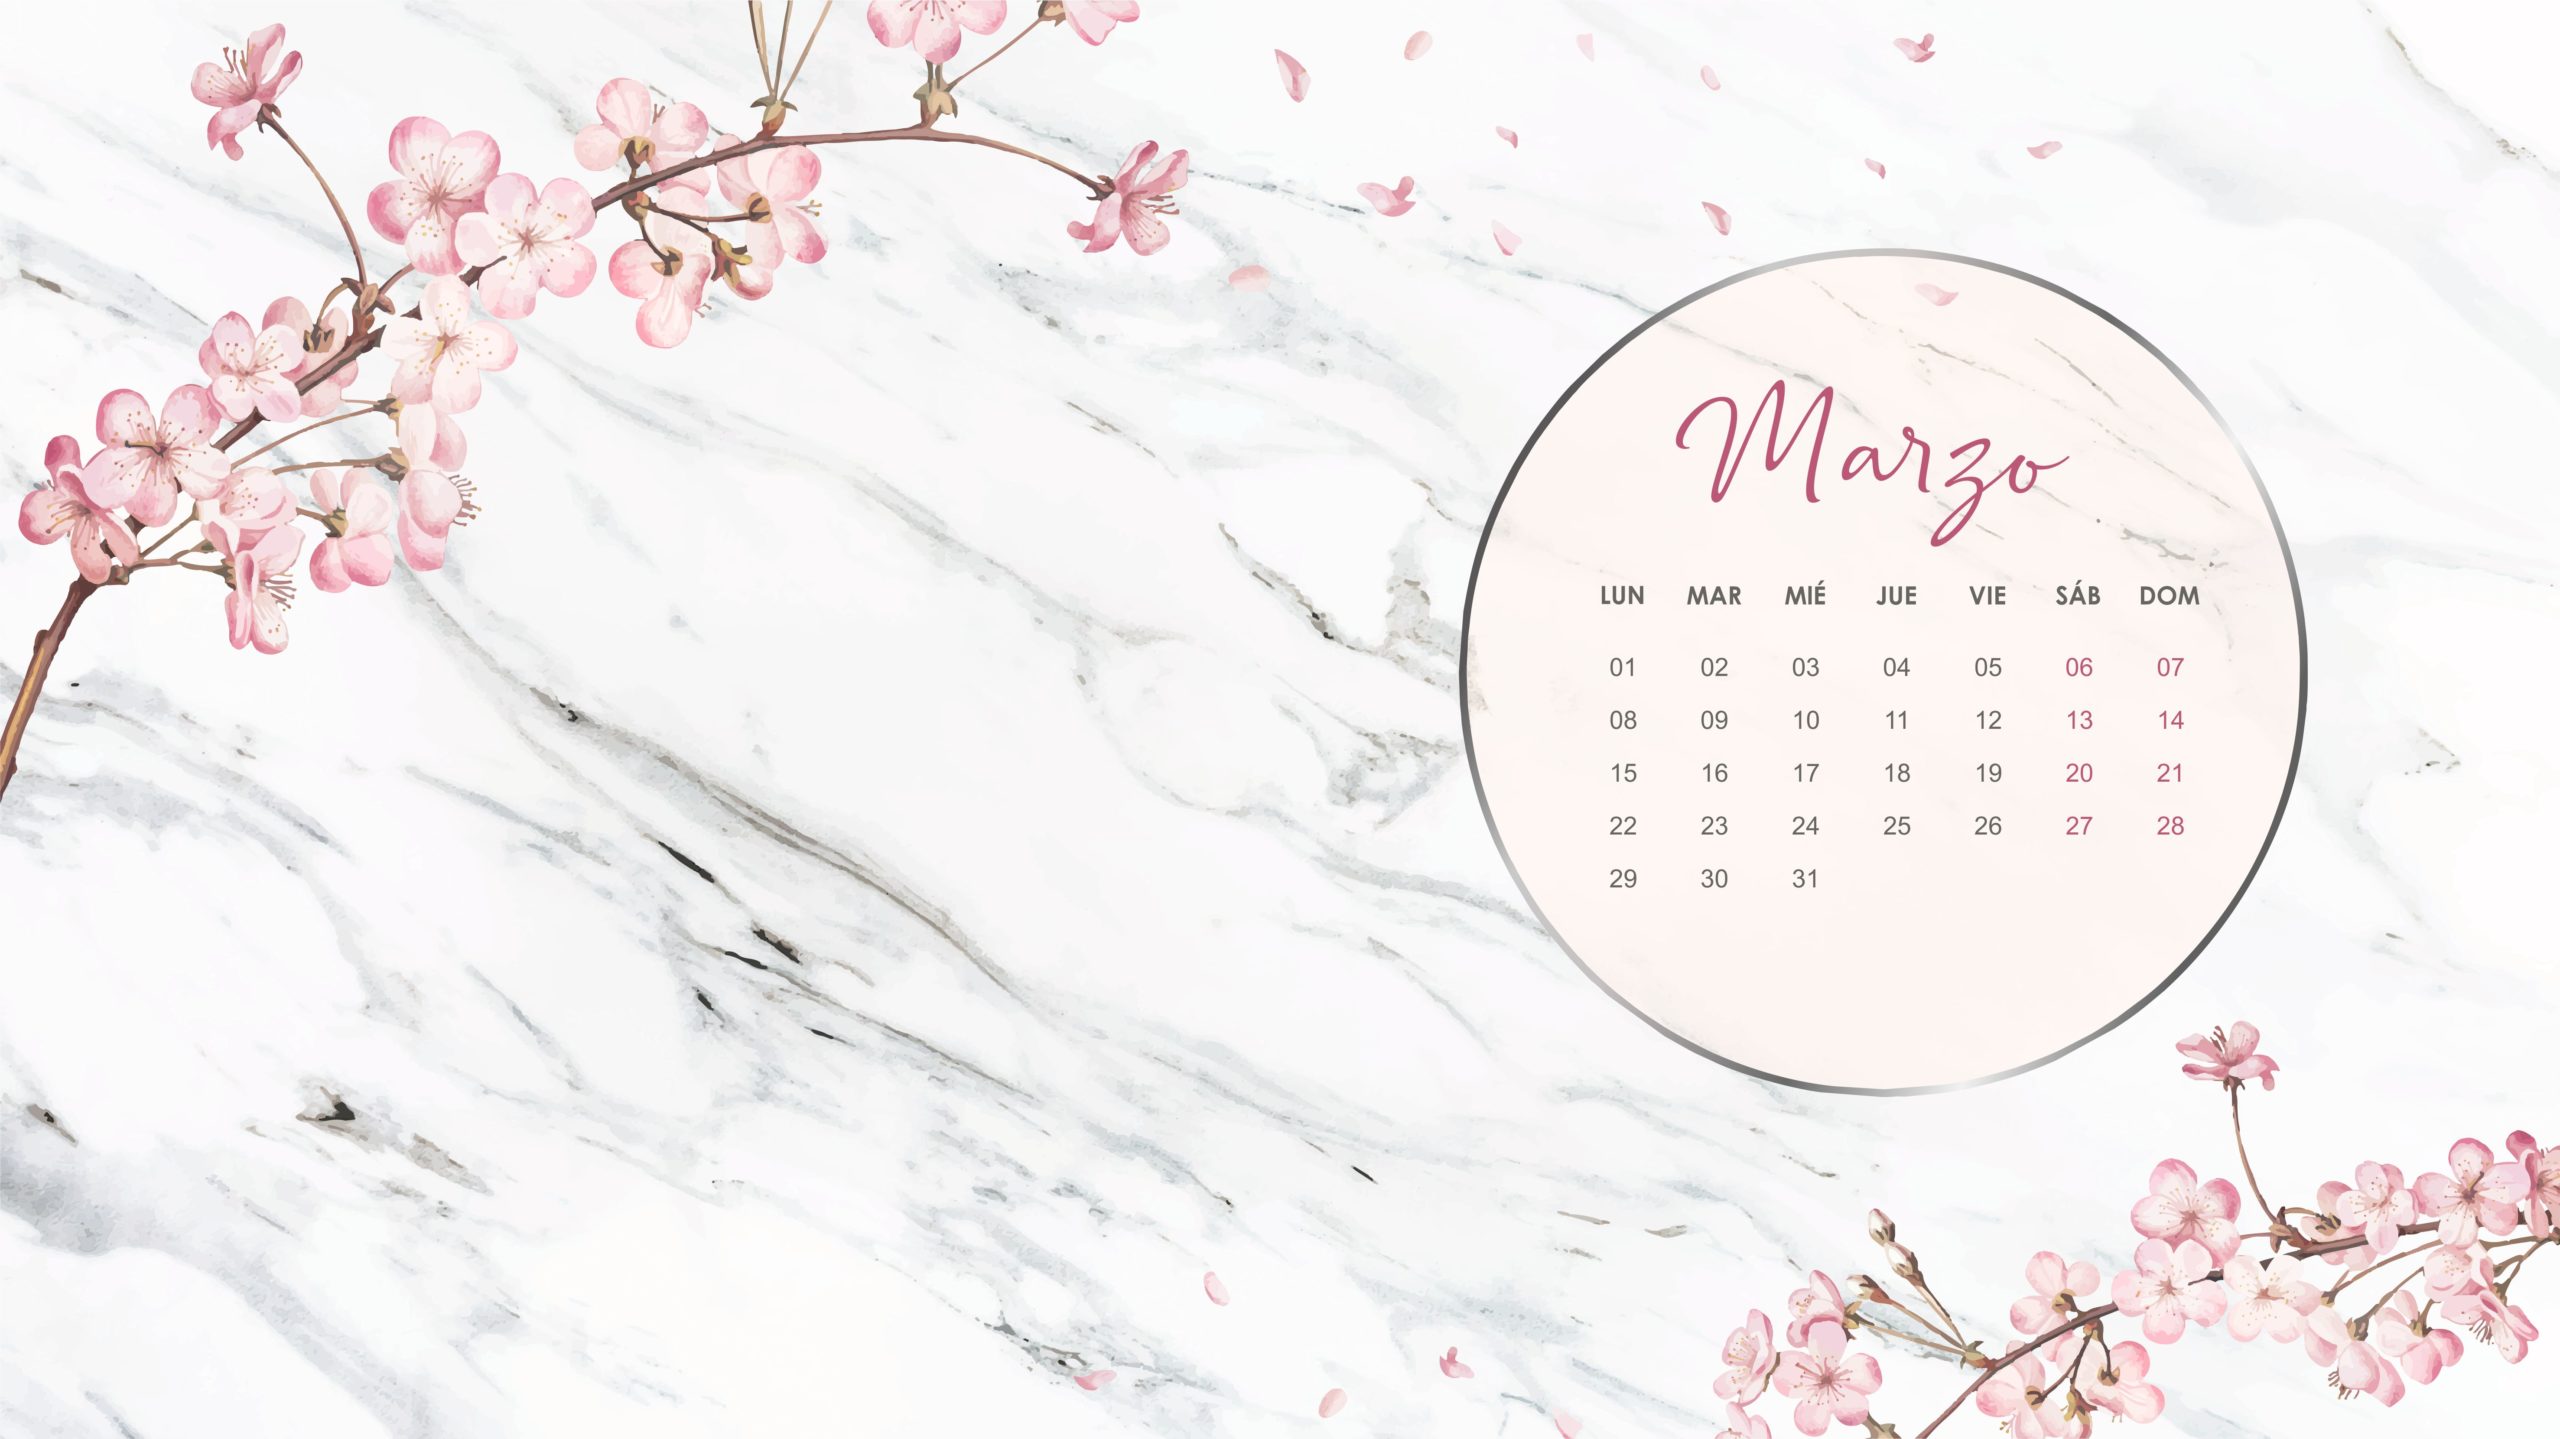 Calendario marzo 2021 descargable - #MiraQuéVinilos